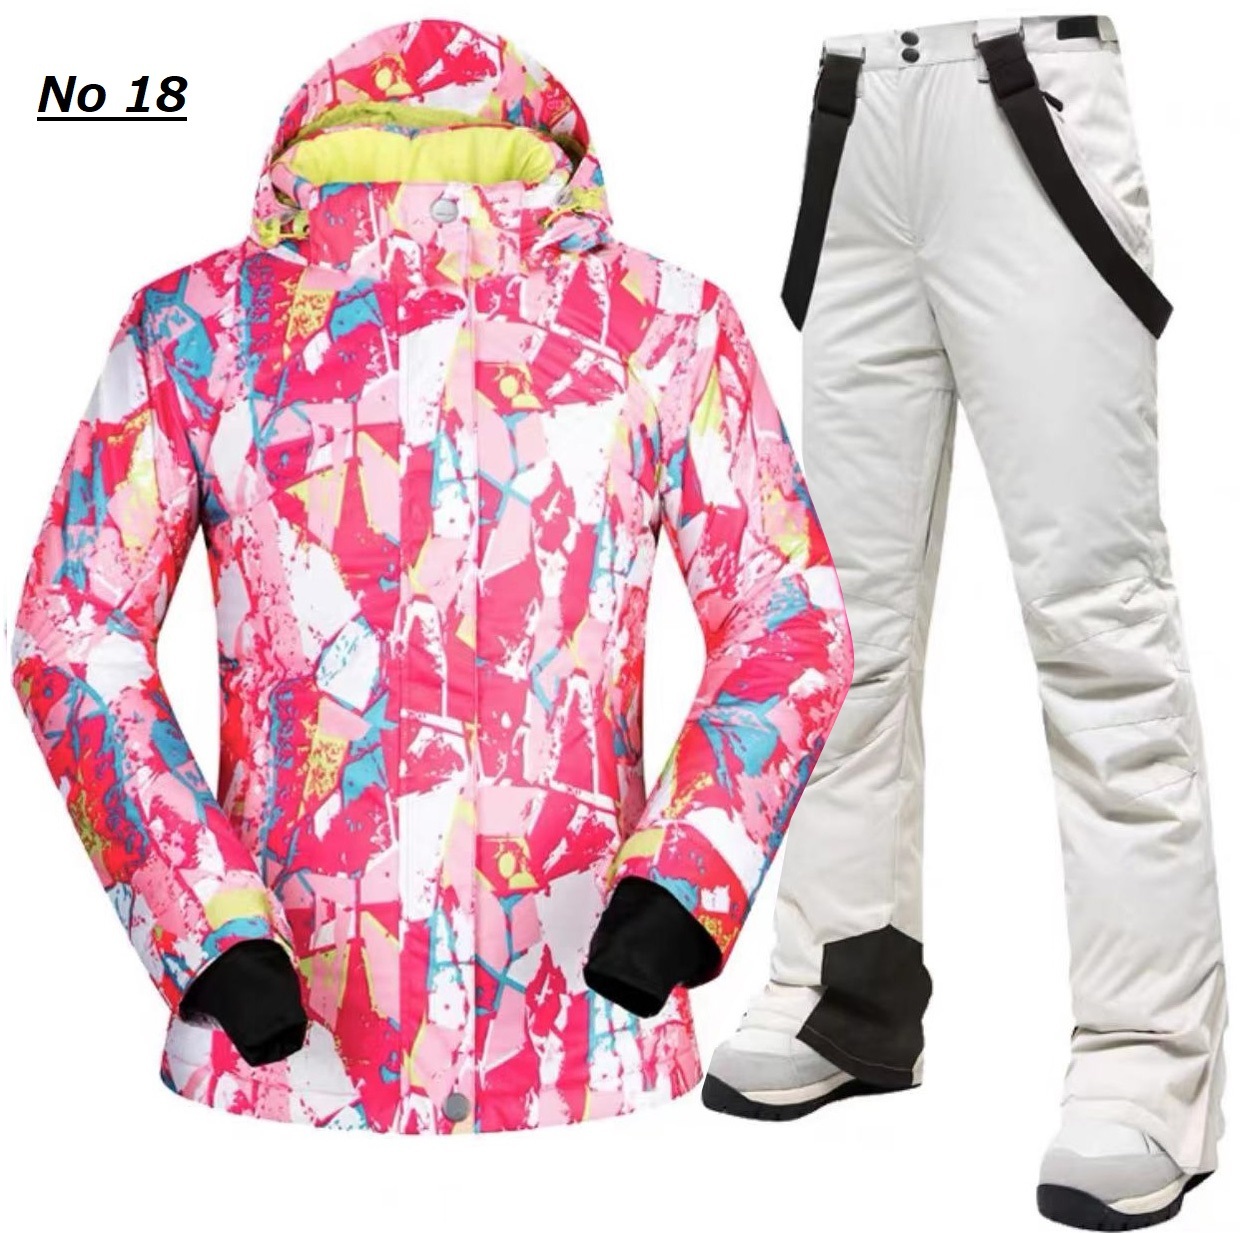 【3,000円OFF!】【ポイント15倍!】スキーウェア レディース スノーボードウェア 女性用 上下セット ジャケット パンツ 111skw02